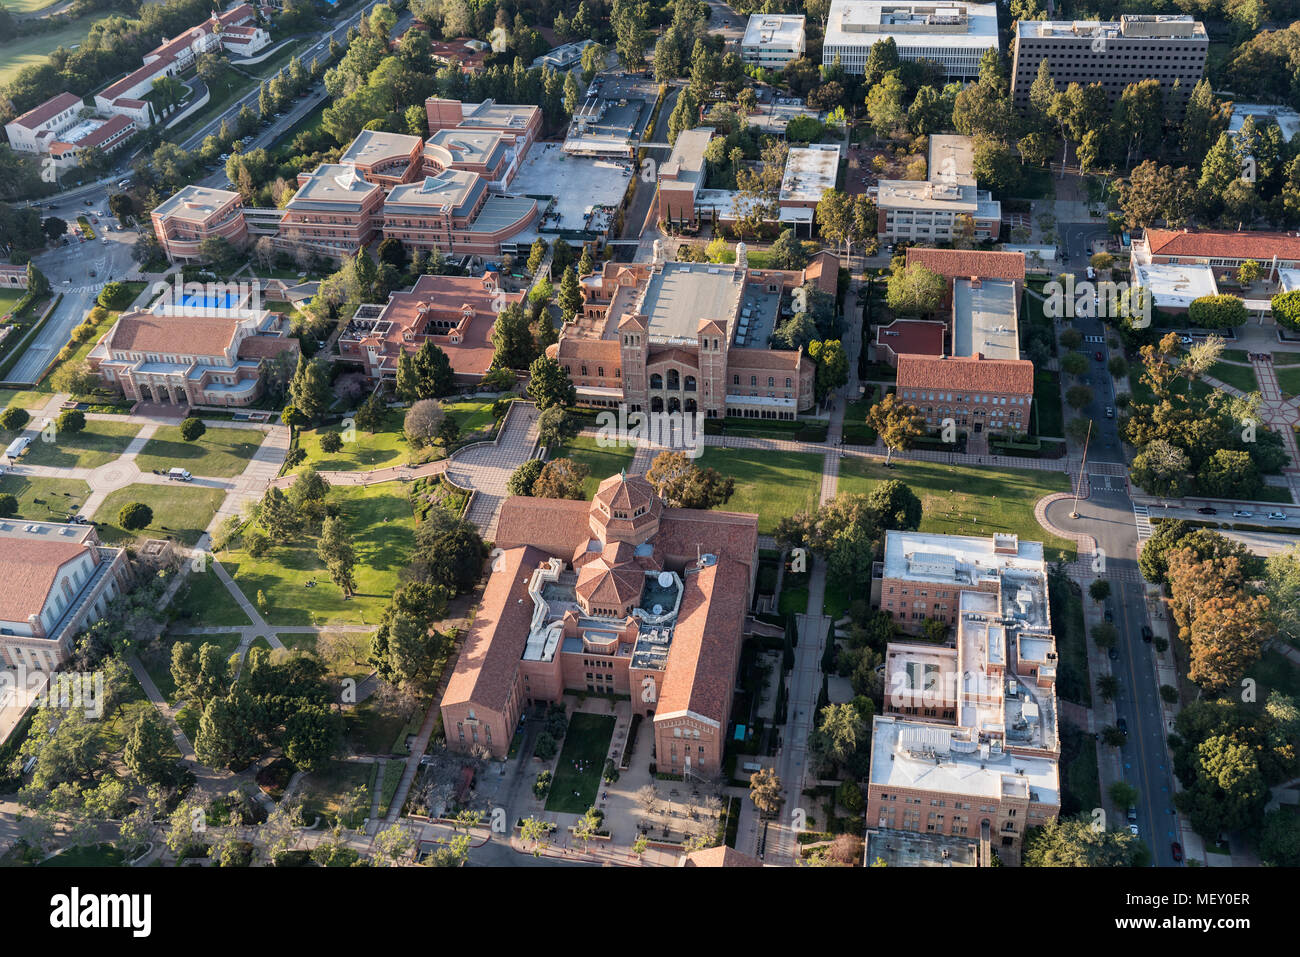 Los Angeles, Californie, USA - 18 Avril 2018 : Après-midi vue aérienne de l'architecture historique sur le campus de l'UCLA à Westwood. Banque D'Images